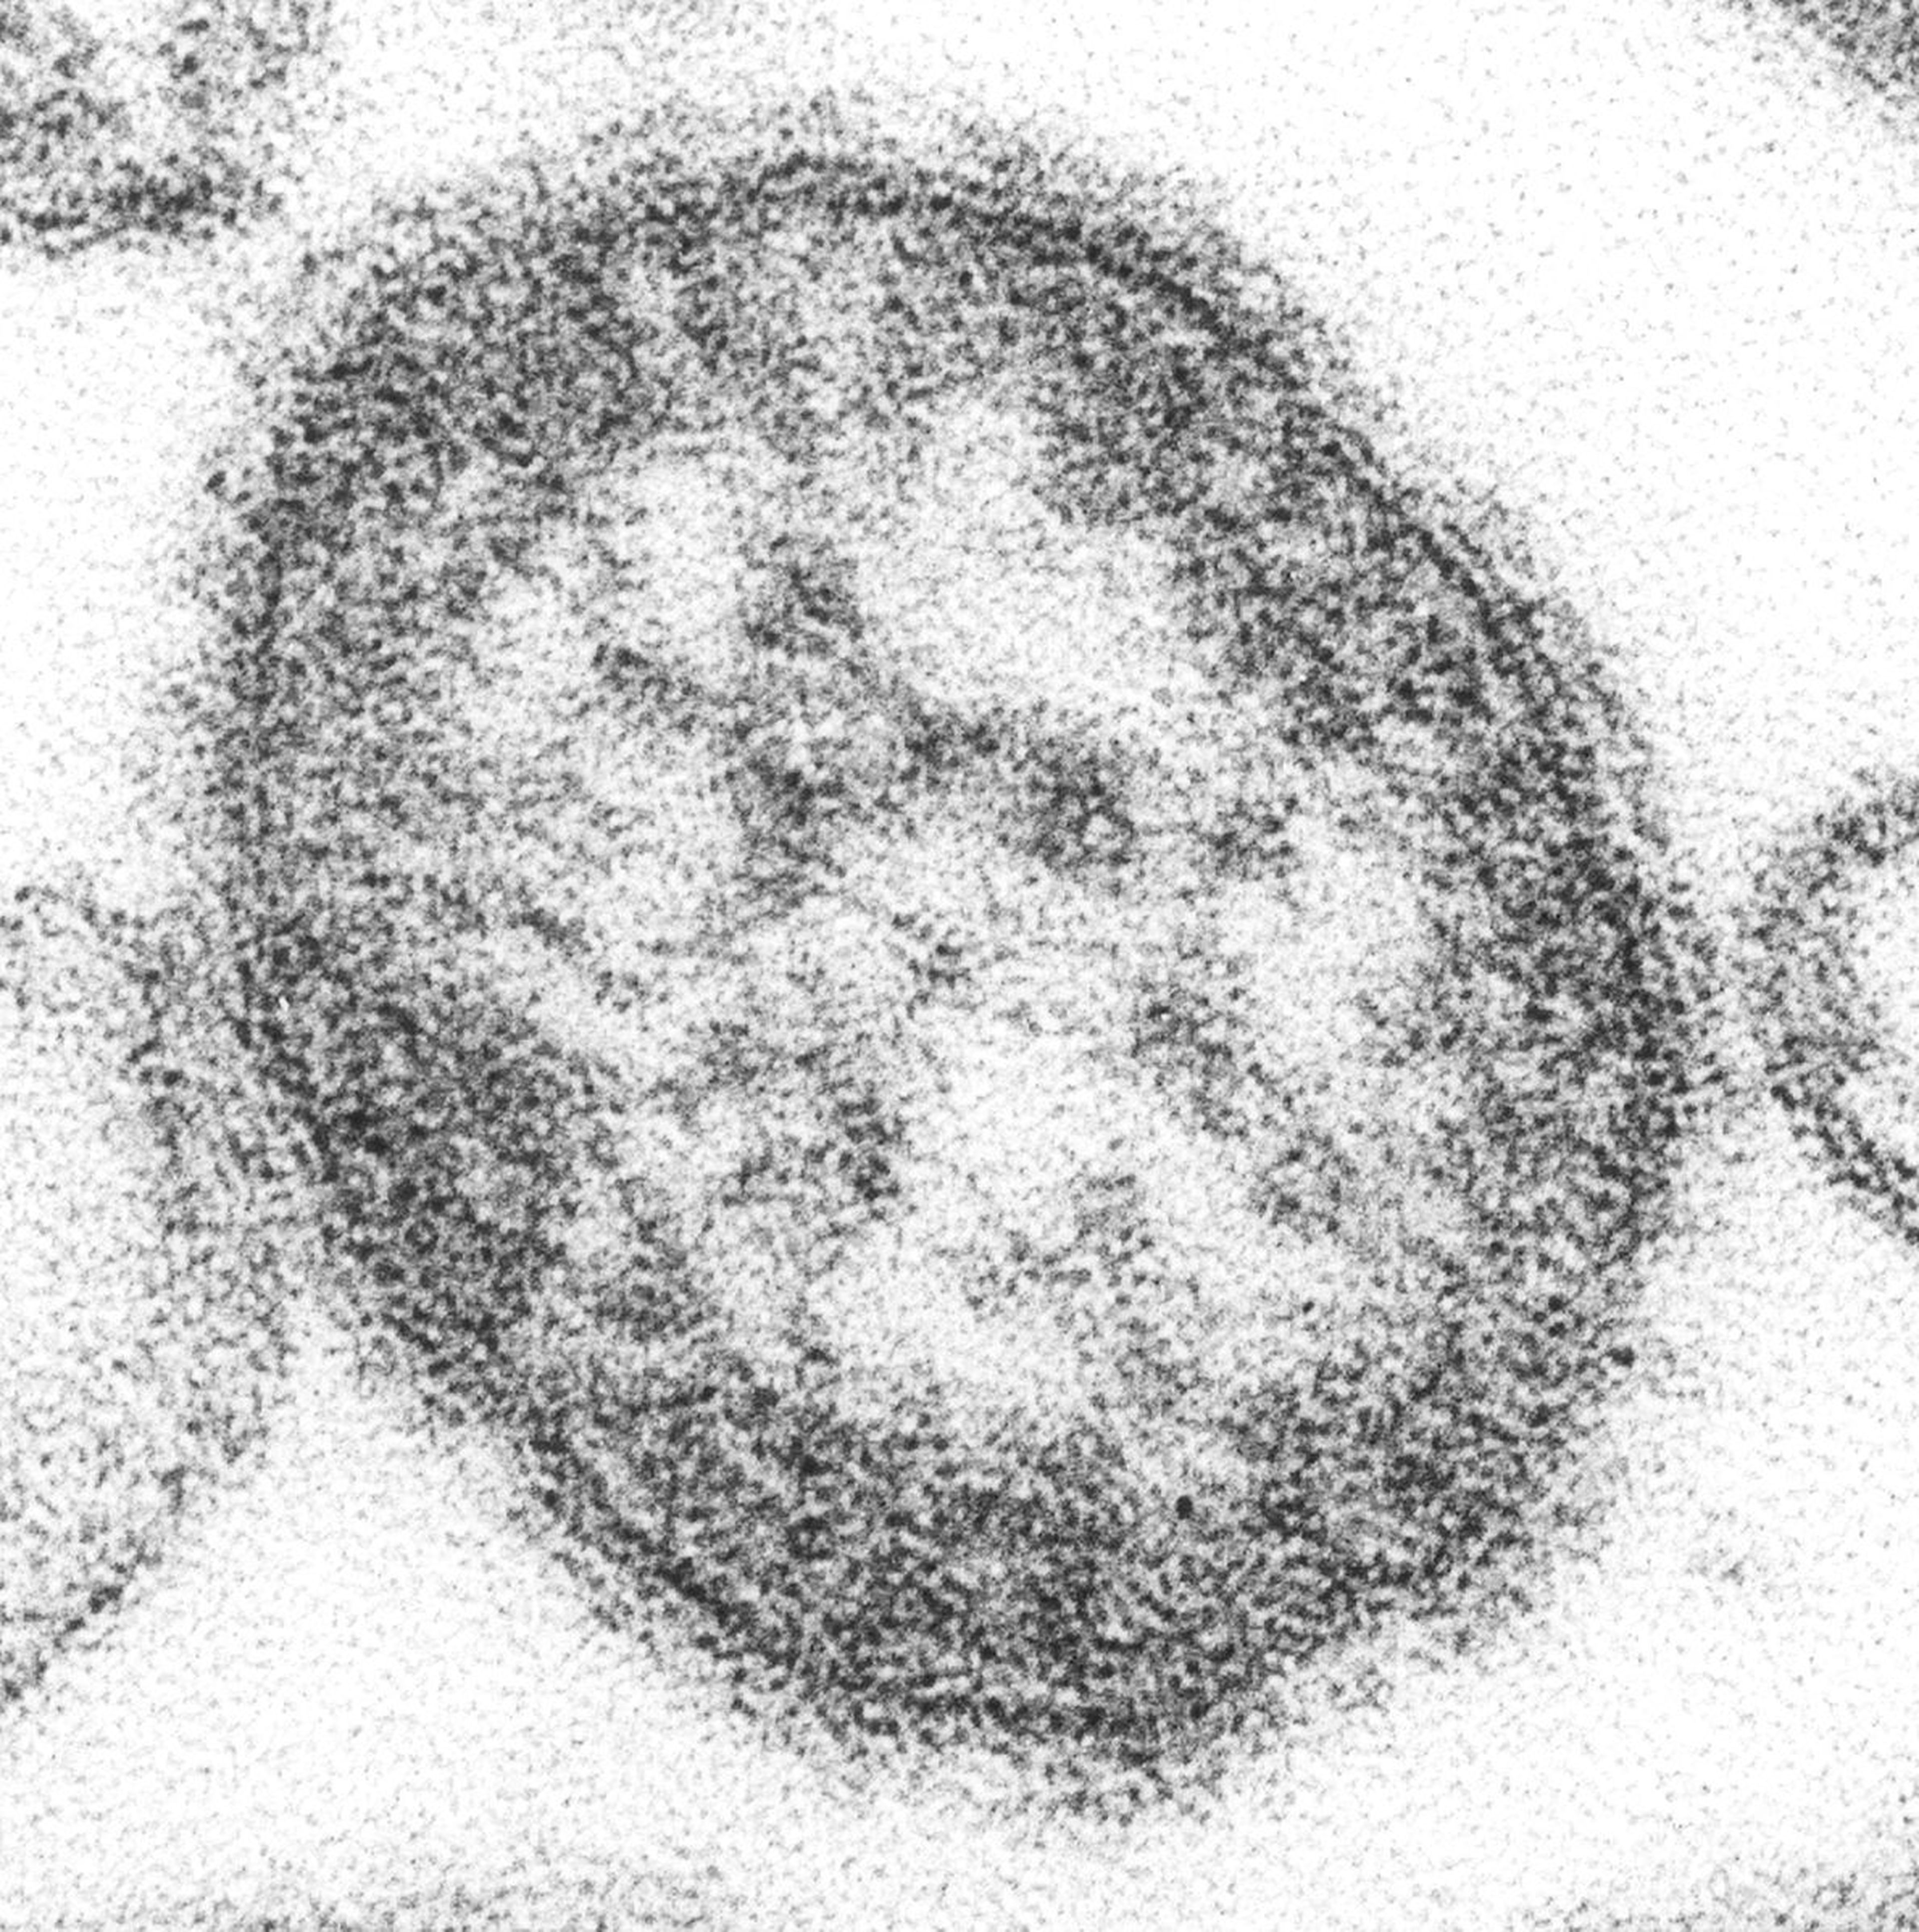 Virus del sarampión.